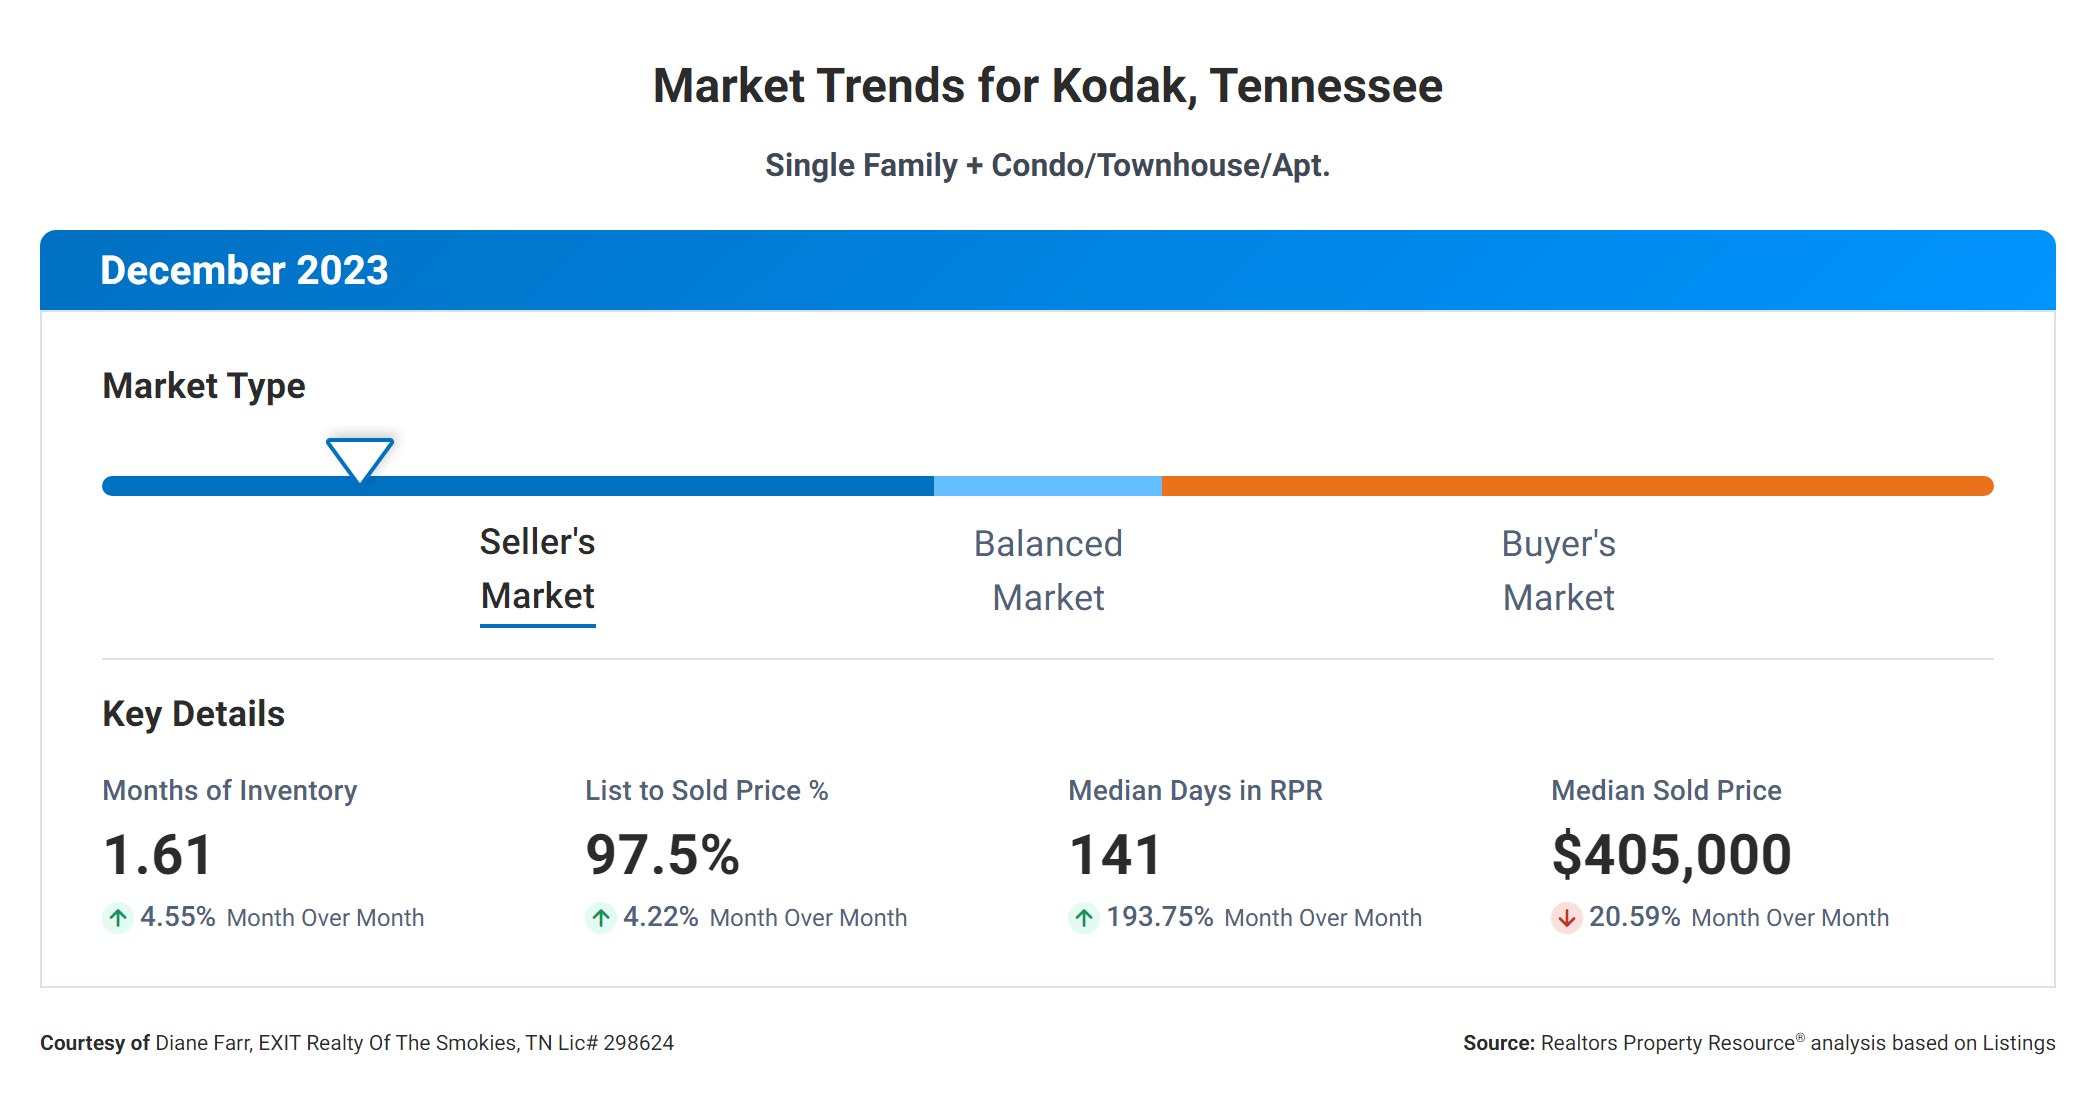 Market Trends for Kodak - December 2023